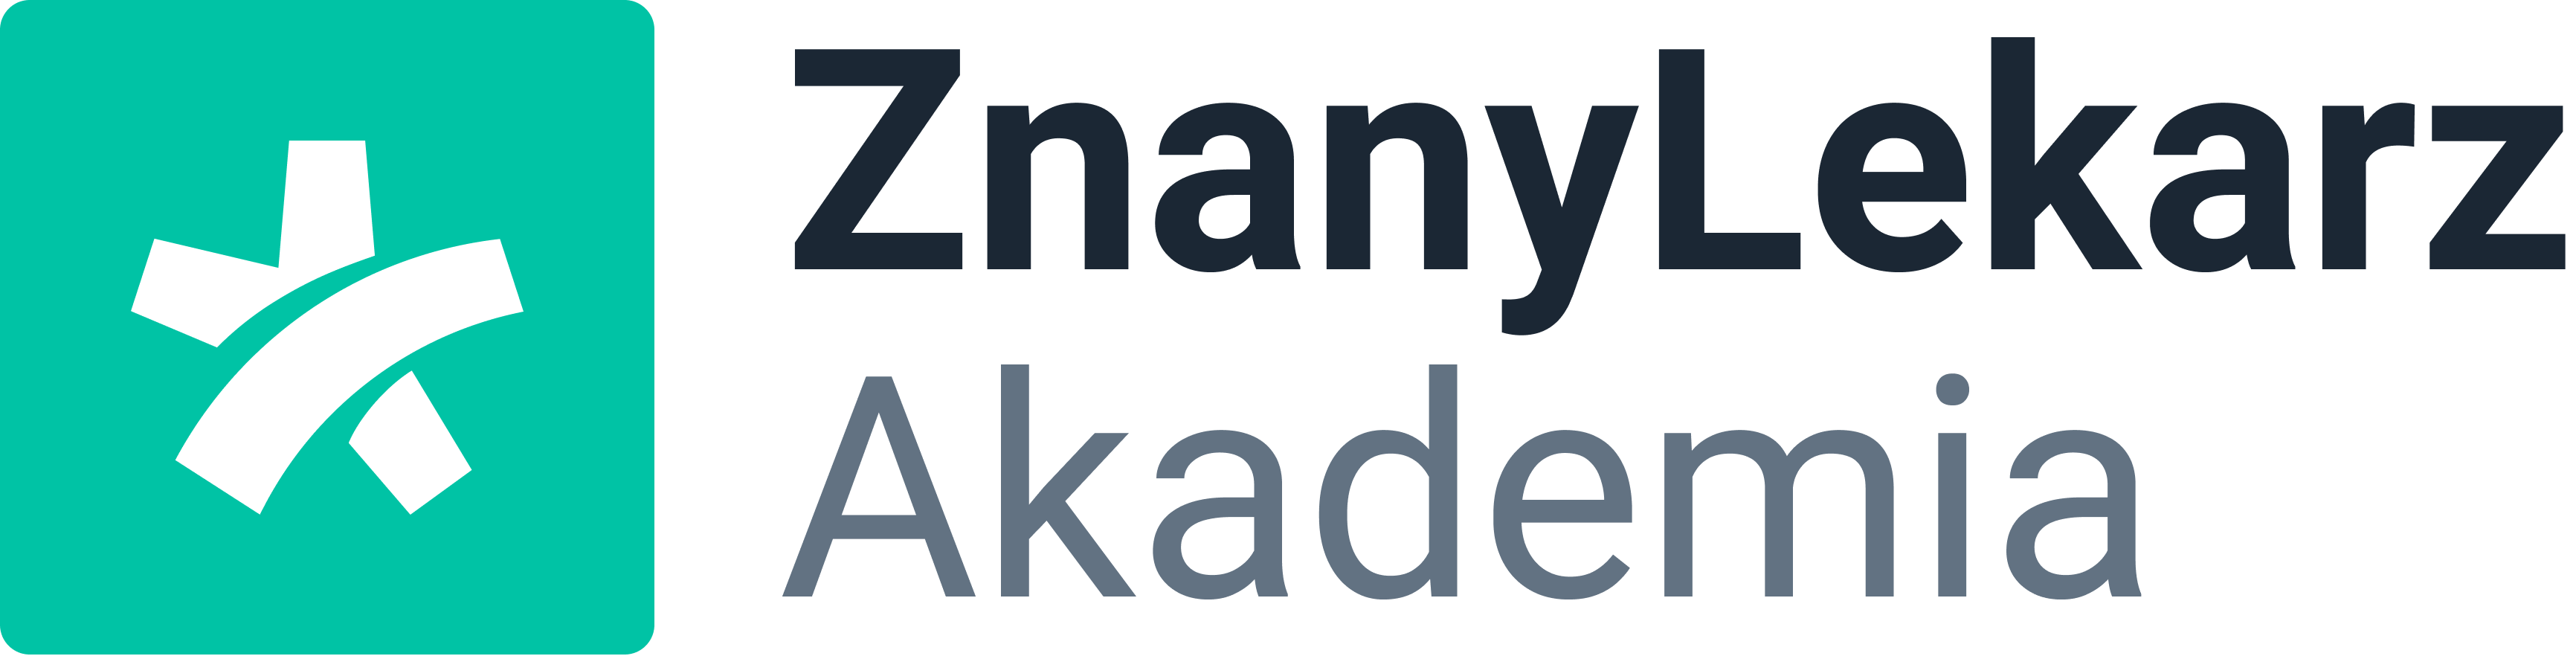 znanylekarz-akademia-logo-primary-dark (1)